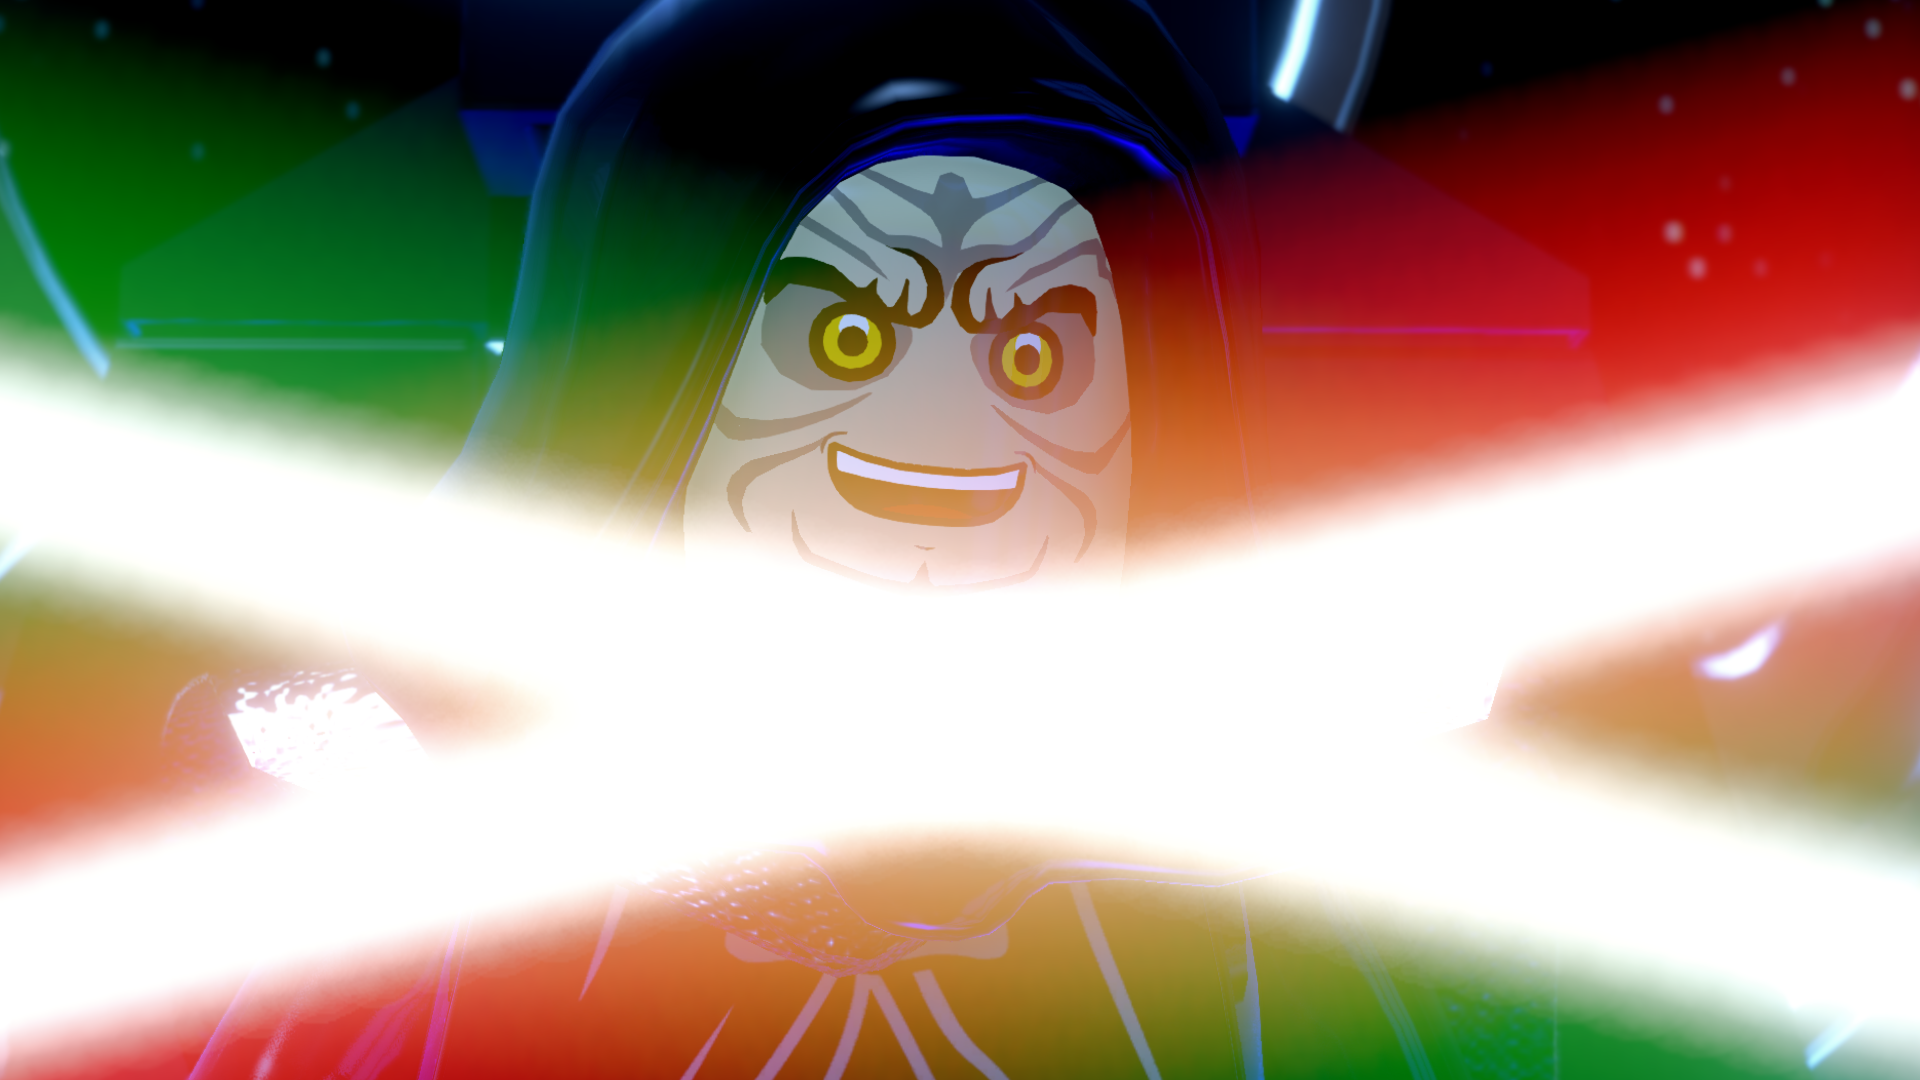 Oyuncular acımasız yeni kombinasyonlar keşfetmeye devam ederken, Lego Star Wars 'Lego May Cry' olarak adlandırıldı